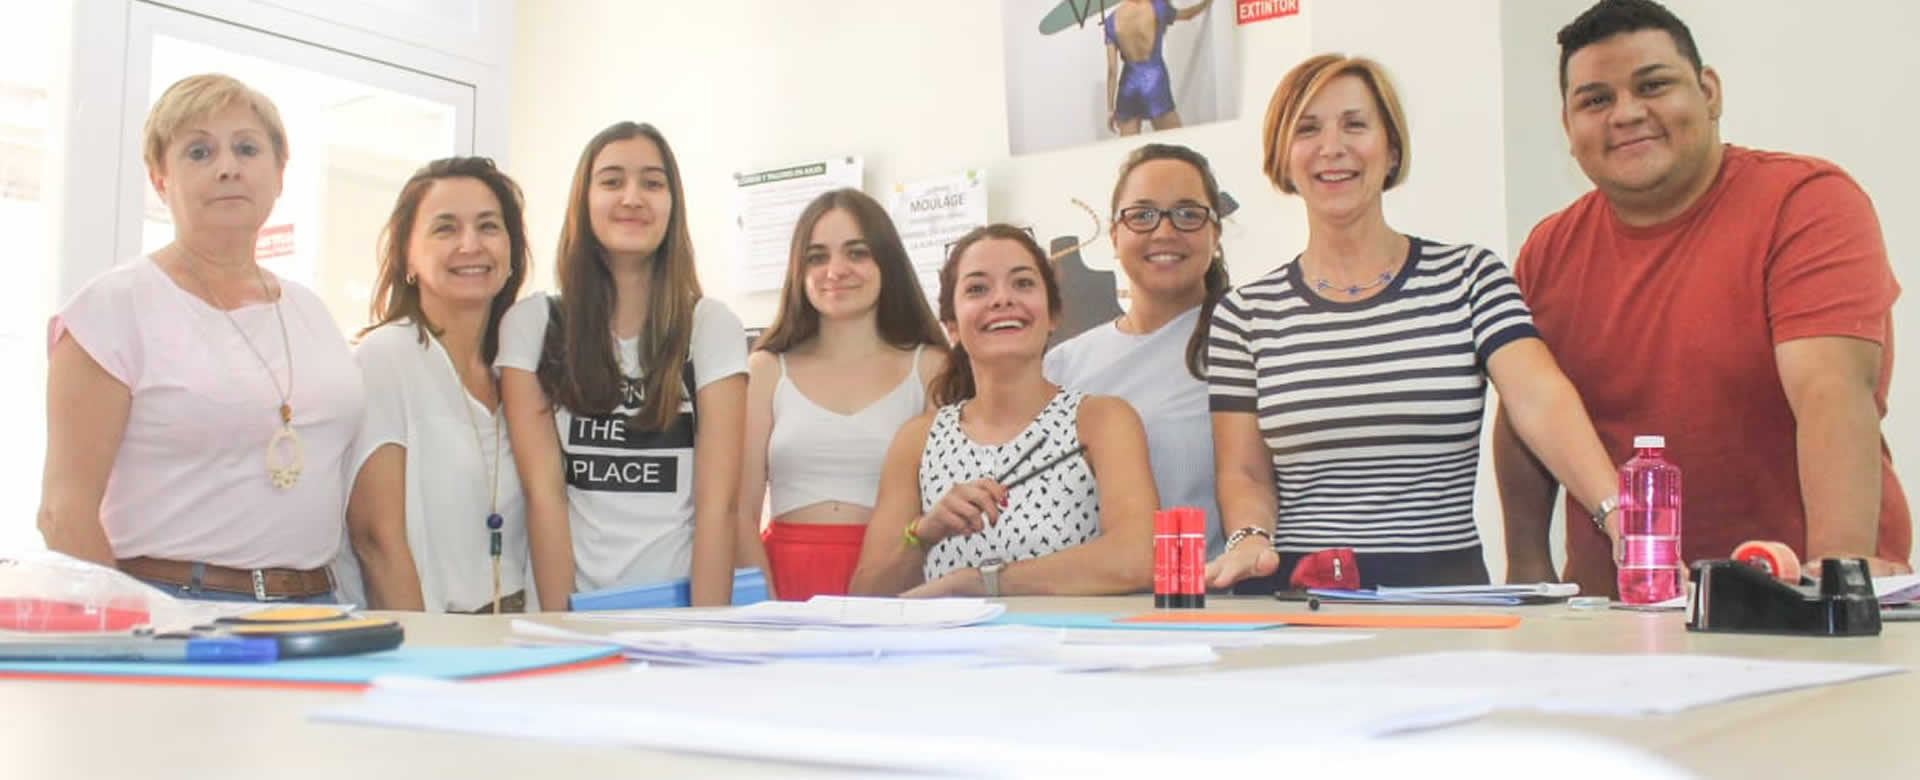 Nicaragua Diseña otorgó beca en el exterior a joven “Diseñador Emergente 2018”